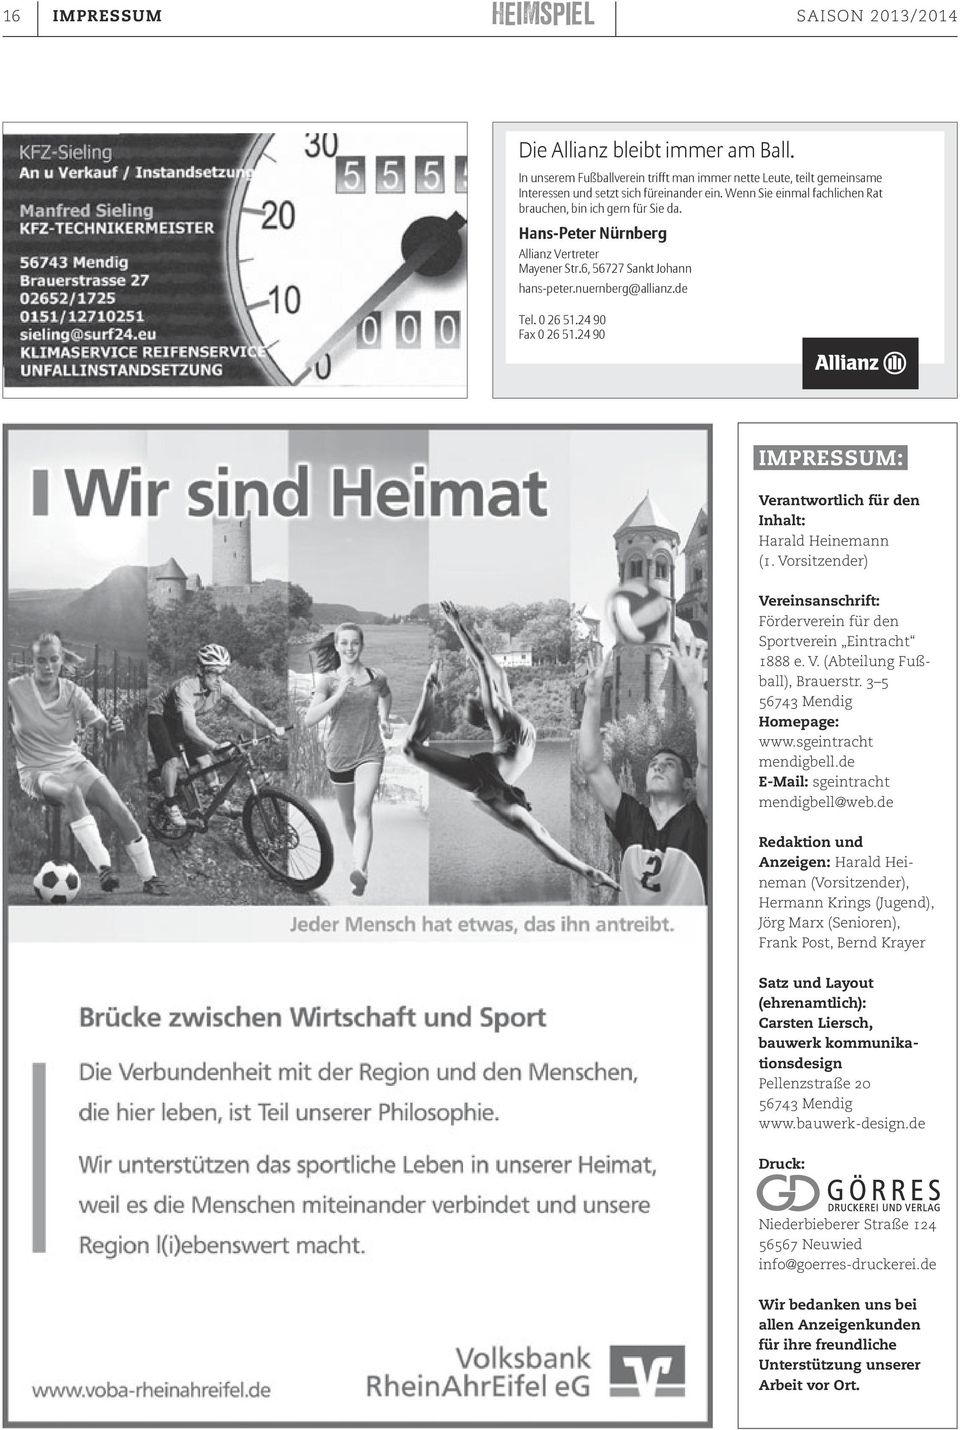 24 90 Fax 0 26 51.24 90 Impressum: Verantwortlich für den Inhalt: Harald Heinemann (1. Vorsitzender) Vereinsanschrift: Förderverein für den Sportverein Eintracht 1888 e. V. (Abteilung Fußball), Brauerstr.